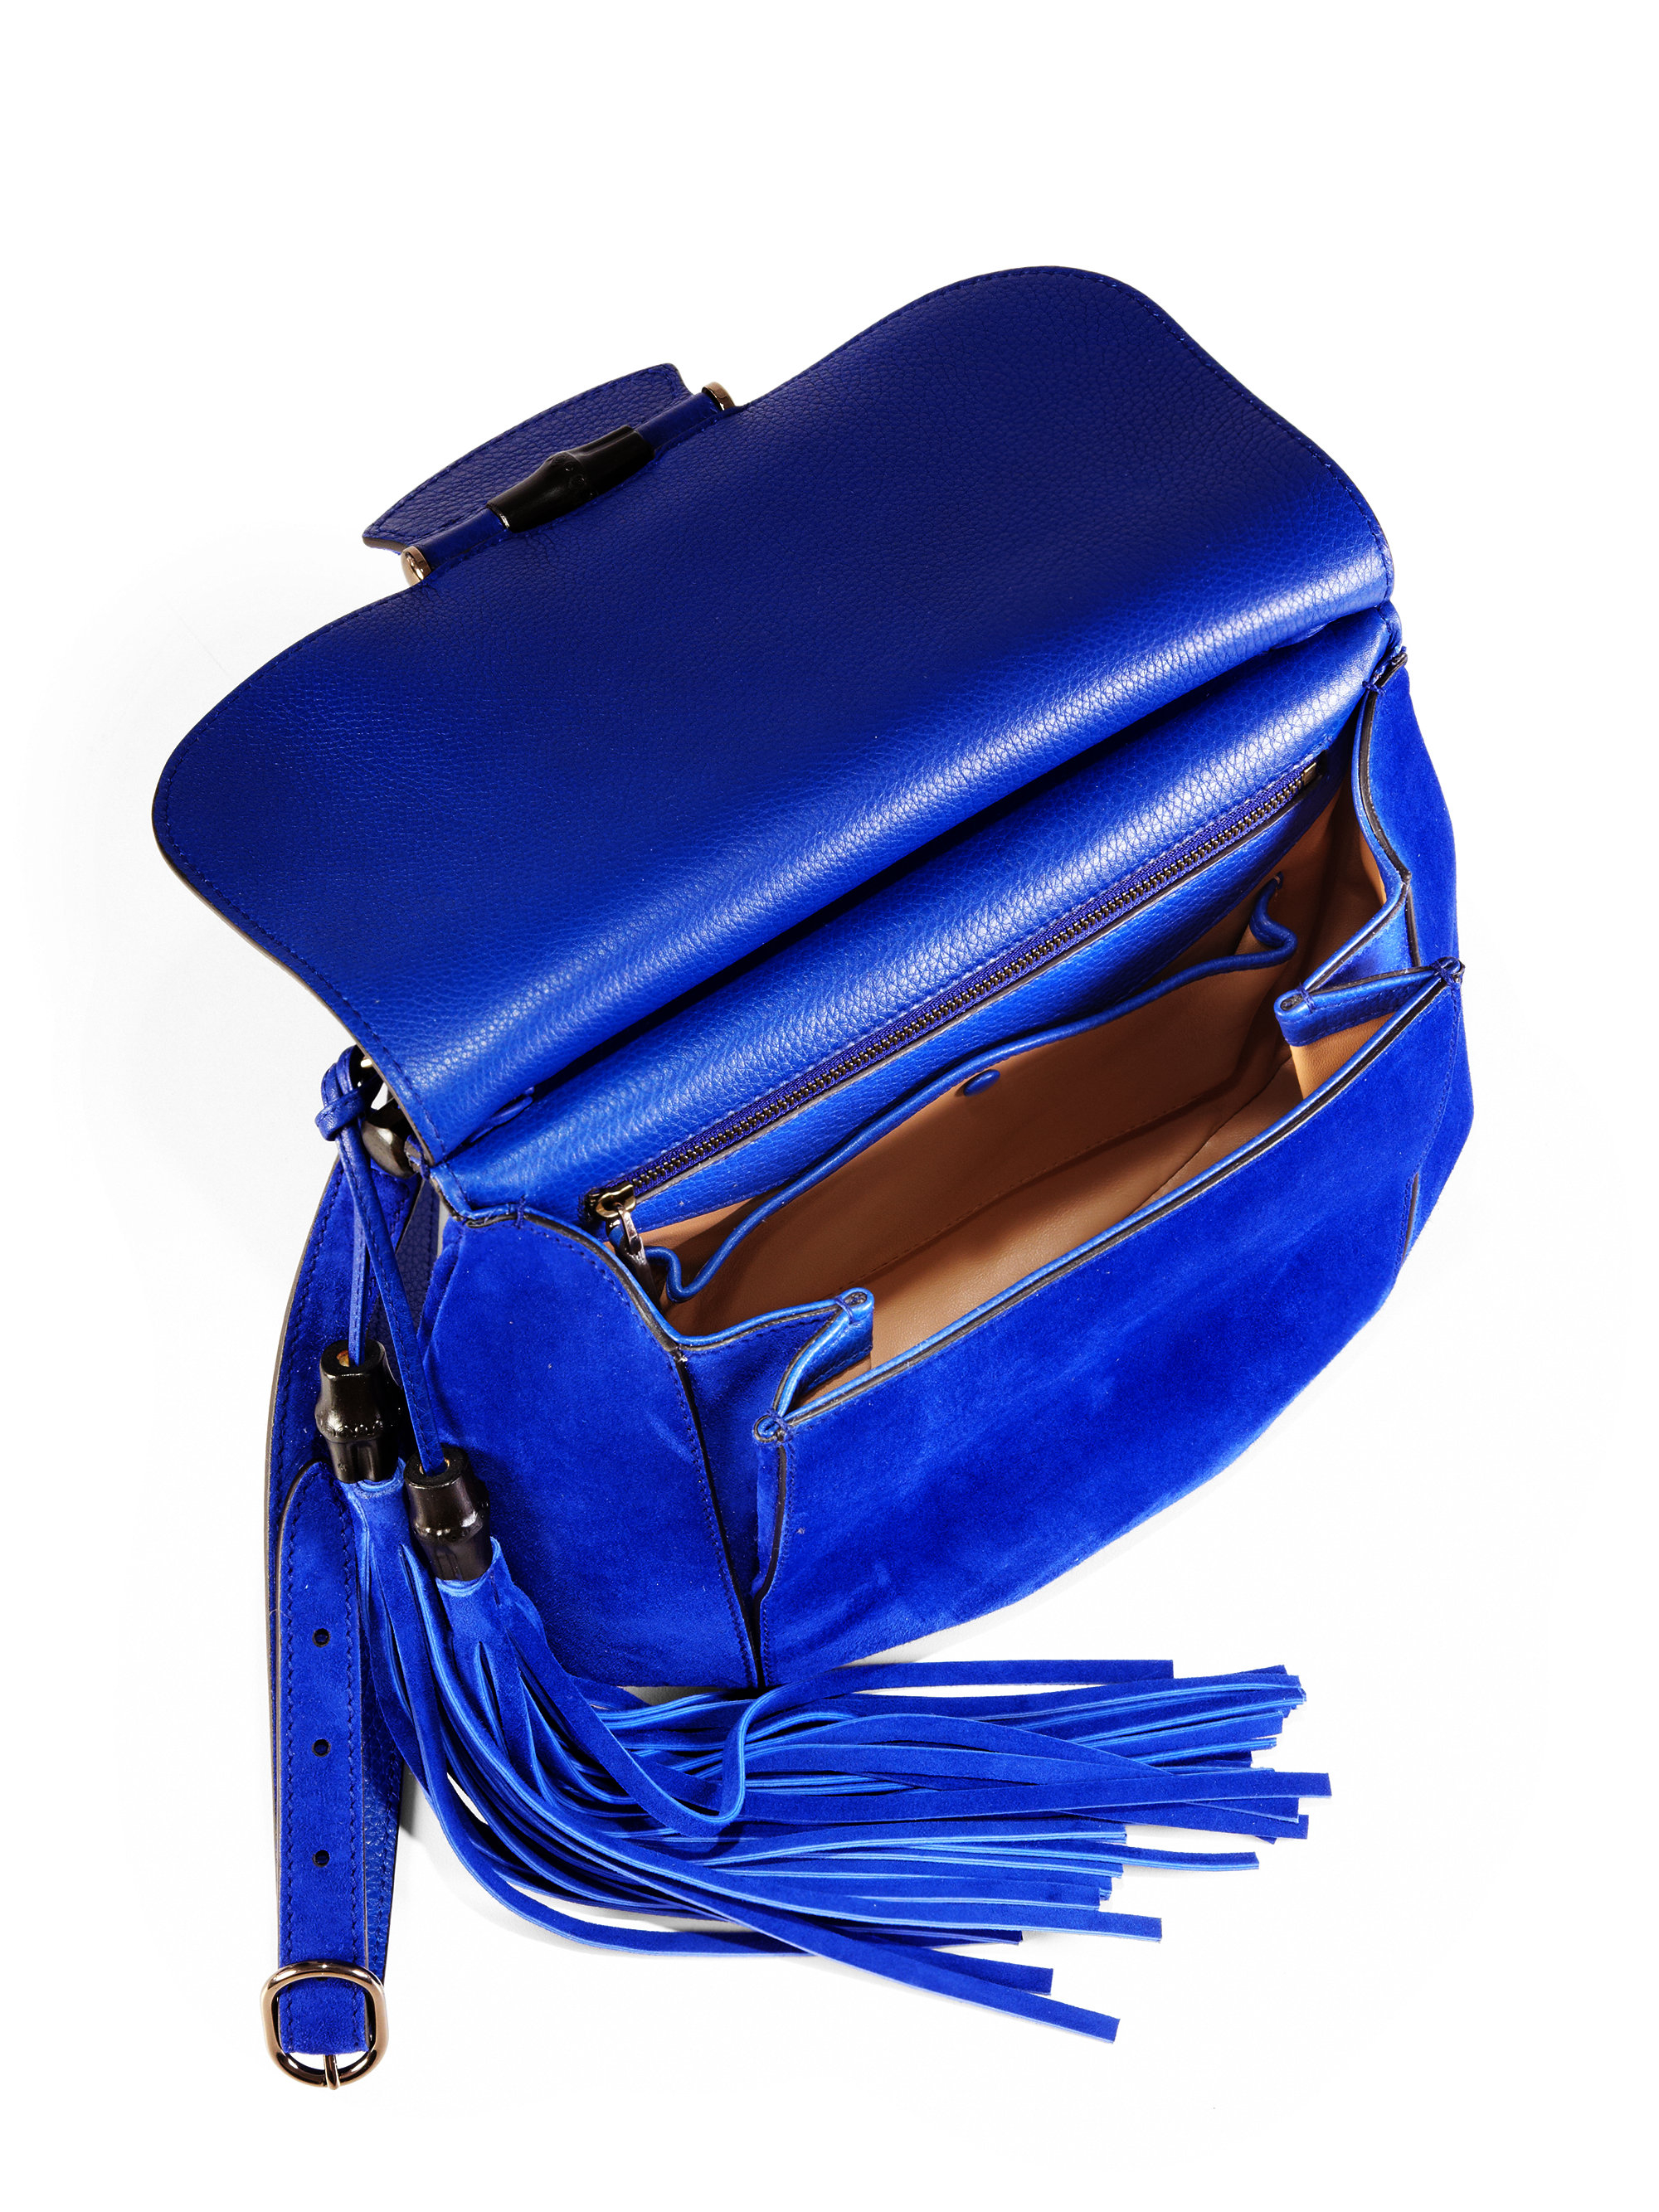 Gucci Nouveau Suede Shoulder Bag in Blue - Lyst